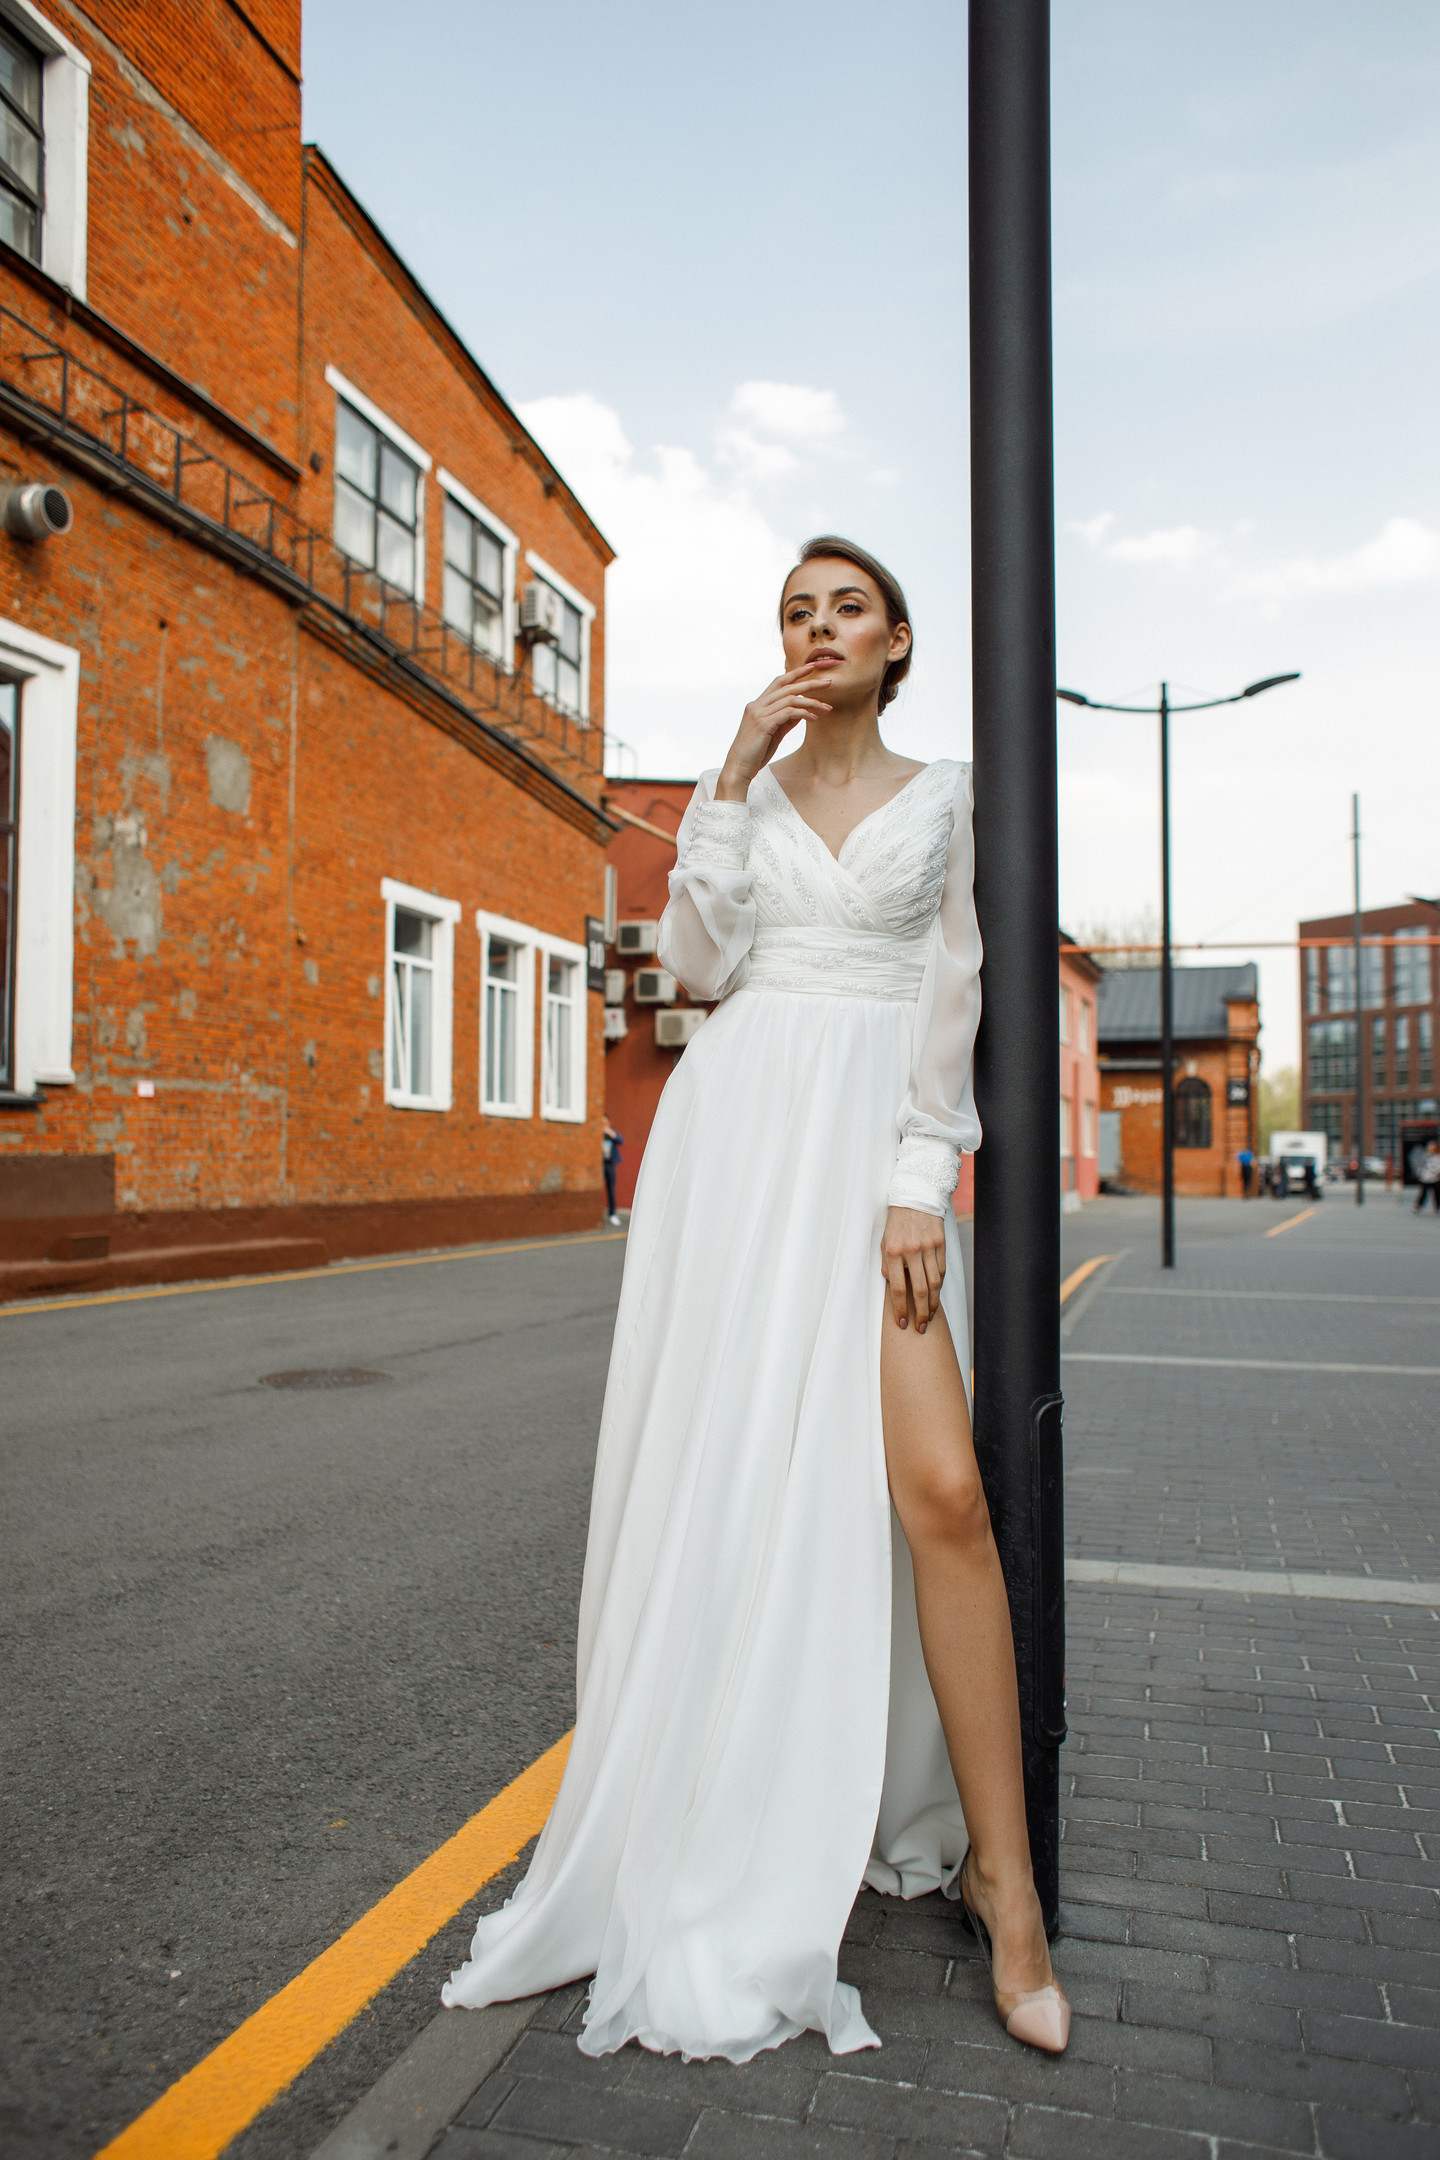 Платье Фабиан, 2020, одежда, платье, свадебное, молочно-белый, шифон, вышивка, рукава, А-силуэт, популярное